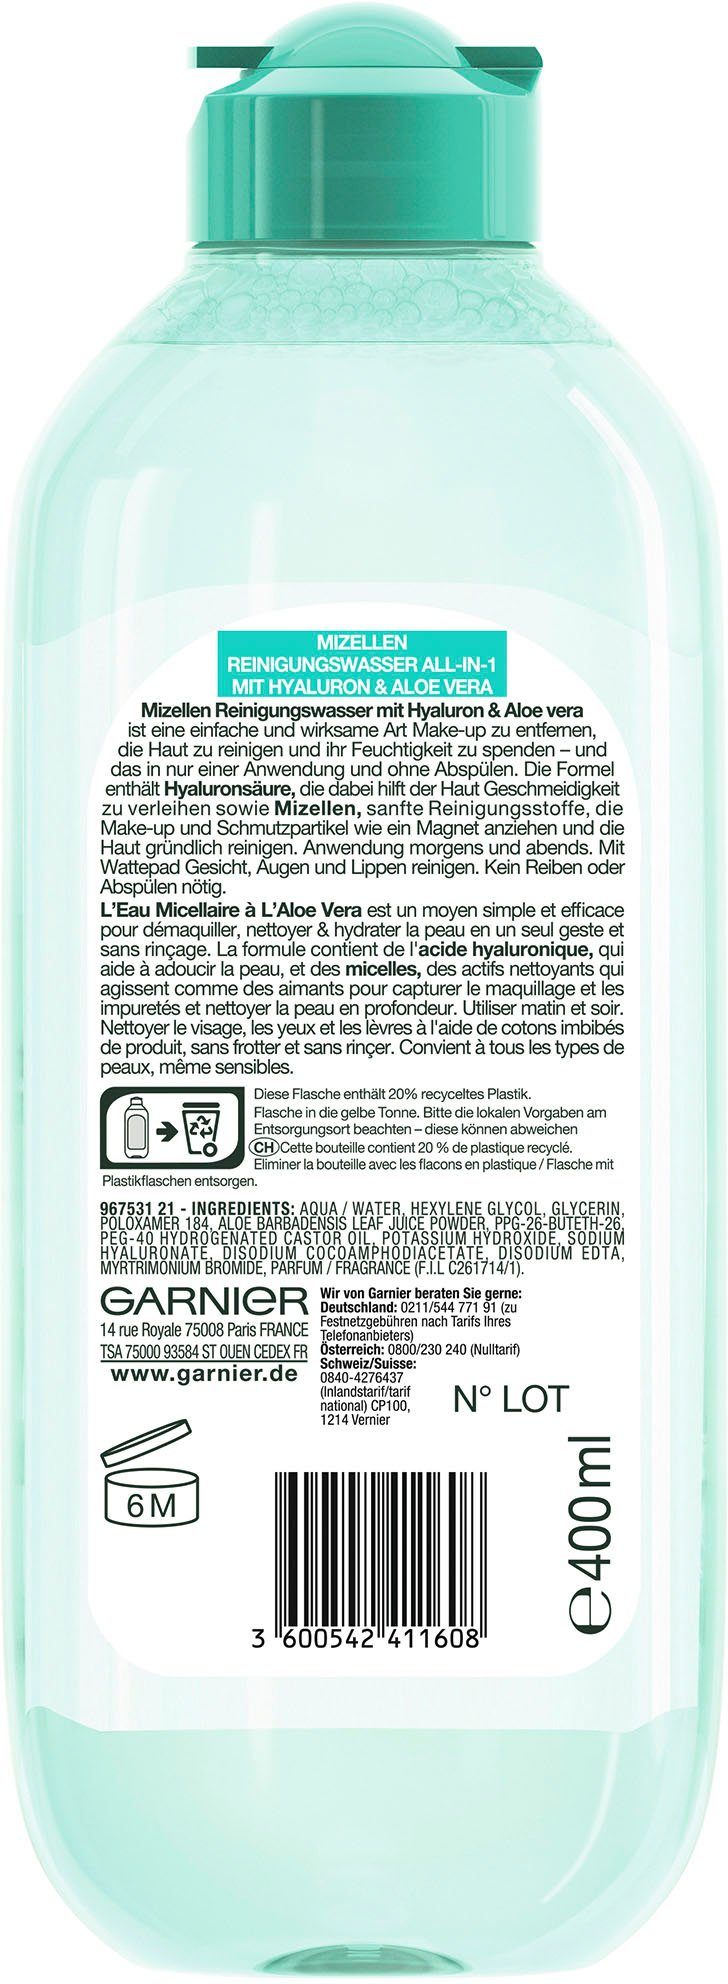 GARNIER Gesichtswasser Mizellen Reinigungswasser All-in-1